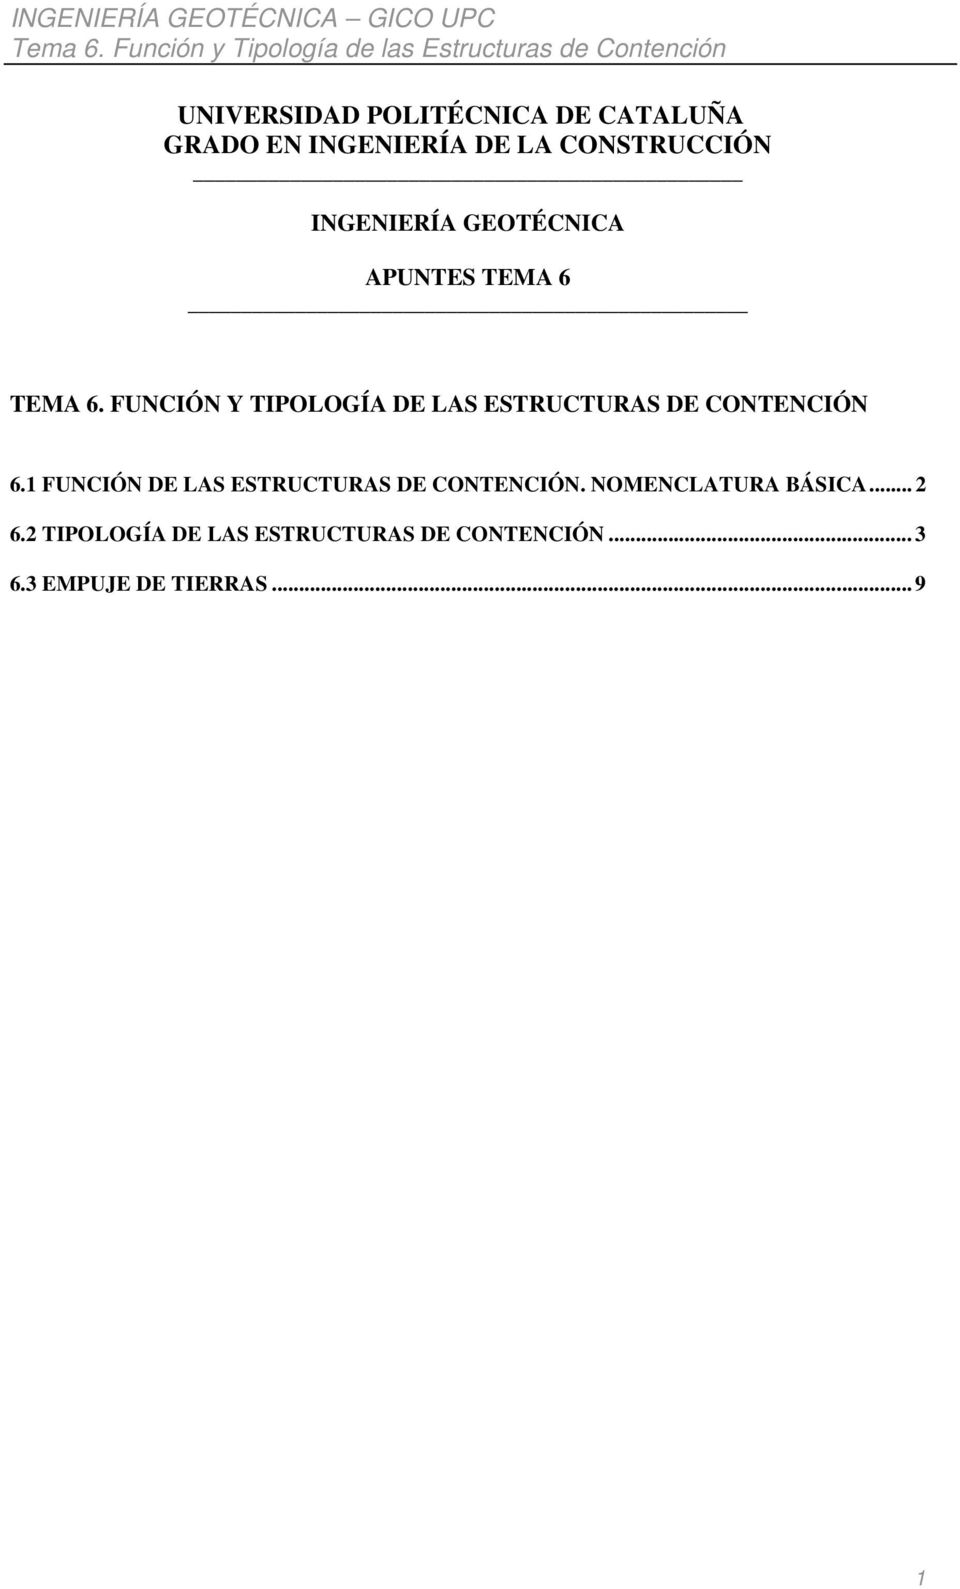 FUNCIÓN Y TIPOLOGÍA DE LAS ESTRUCTURAS DE CONTENCIÓN 6.